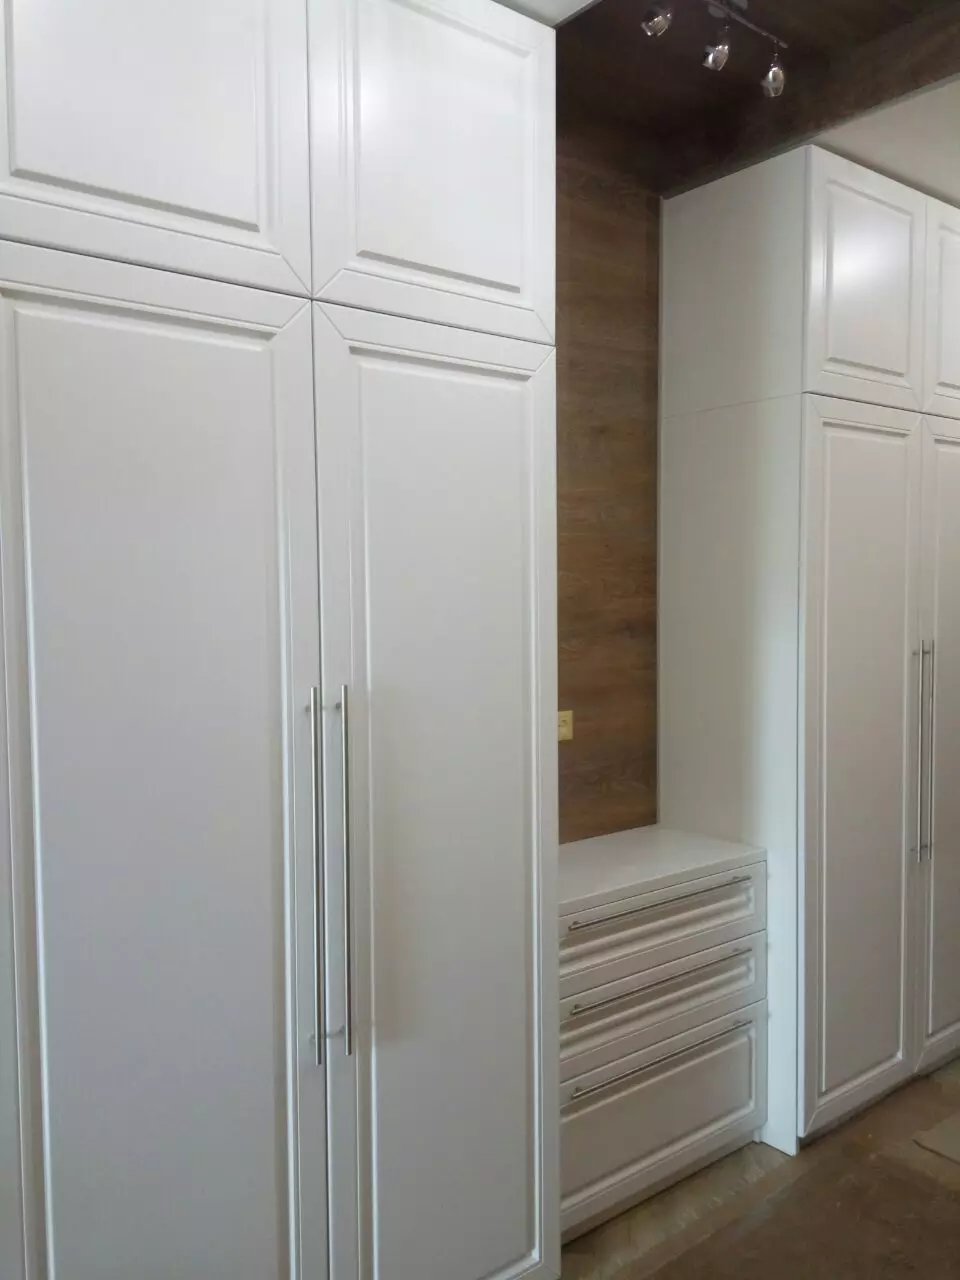 Swing Cabinets i korridoren (57 bilder): Granskning av skåp med svängdörrar och med mezzanin i korridoren, fasader design 9161_19